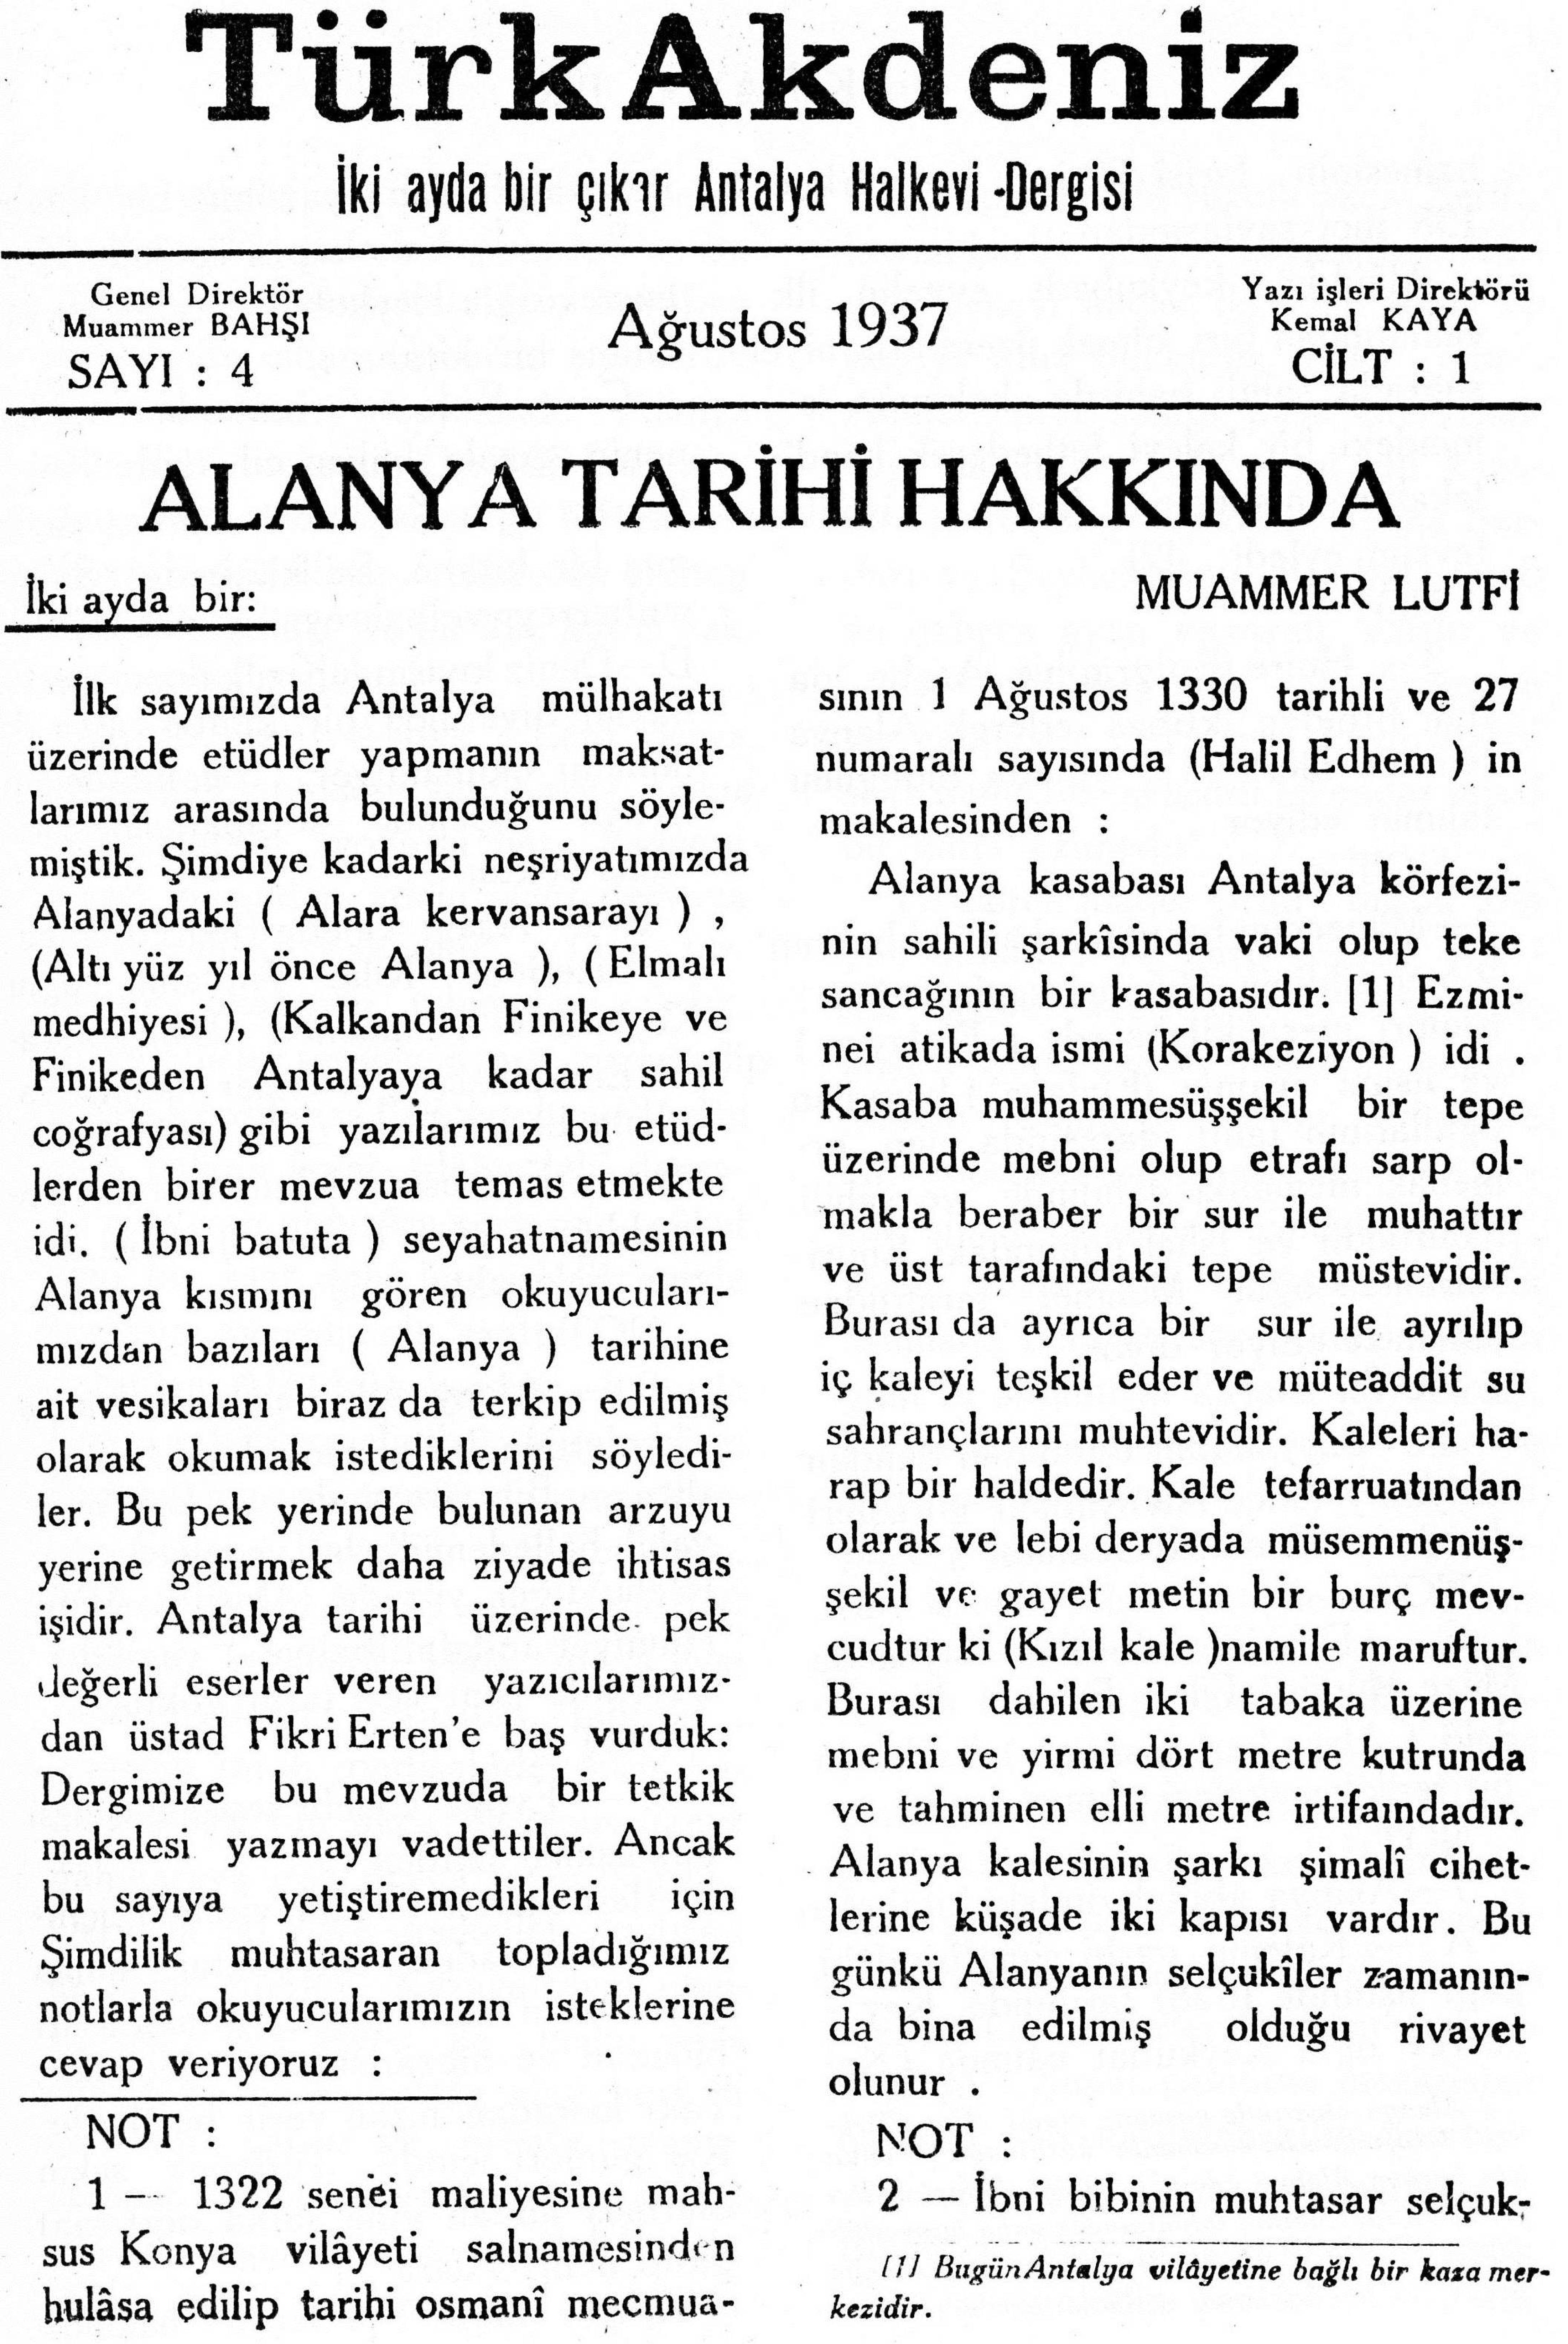 he-turk-akdeniz_1937-1(04)